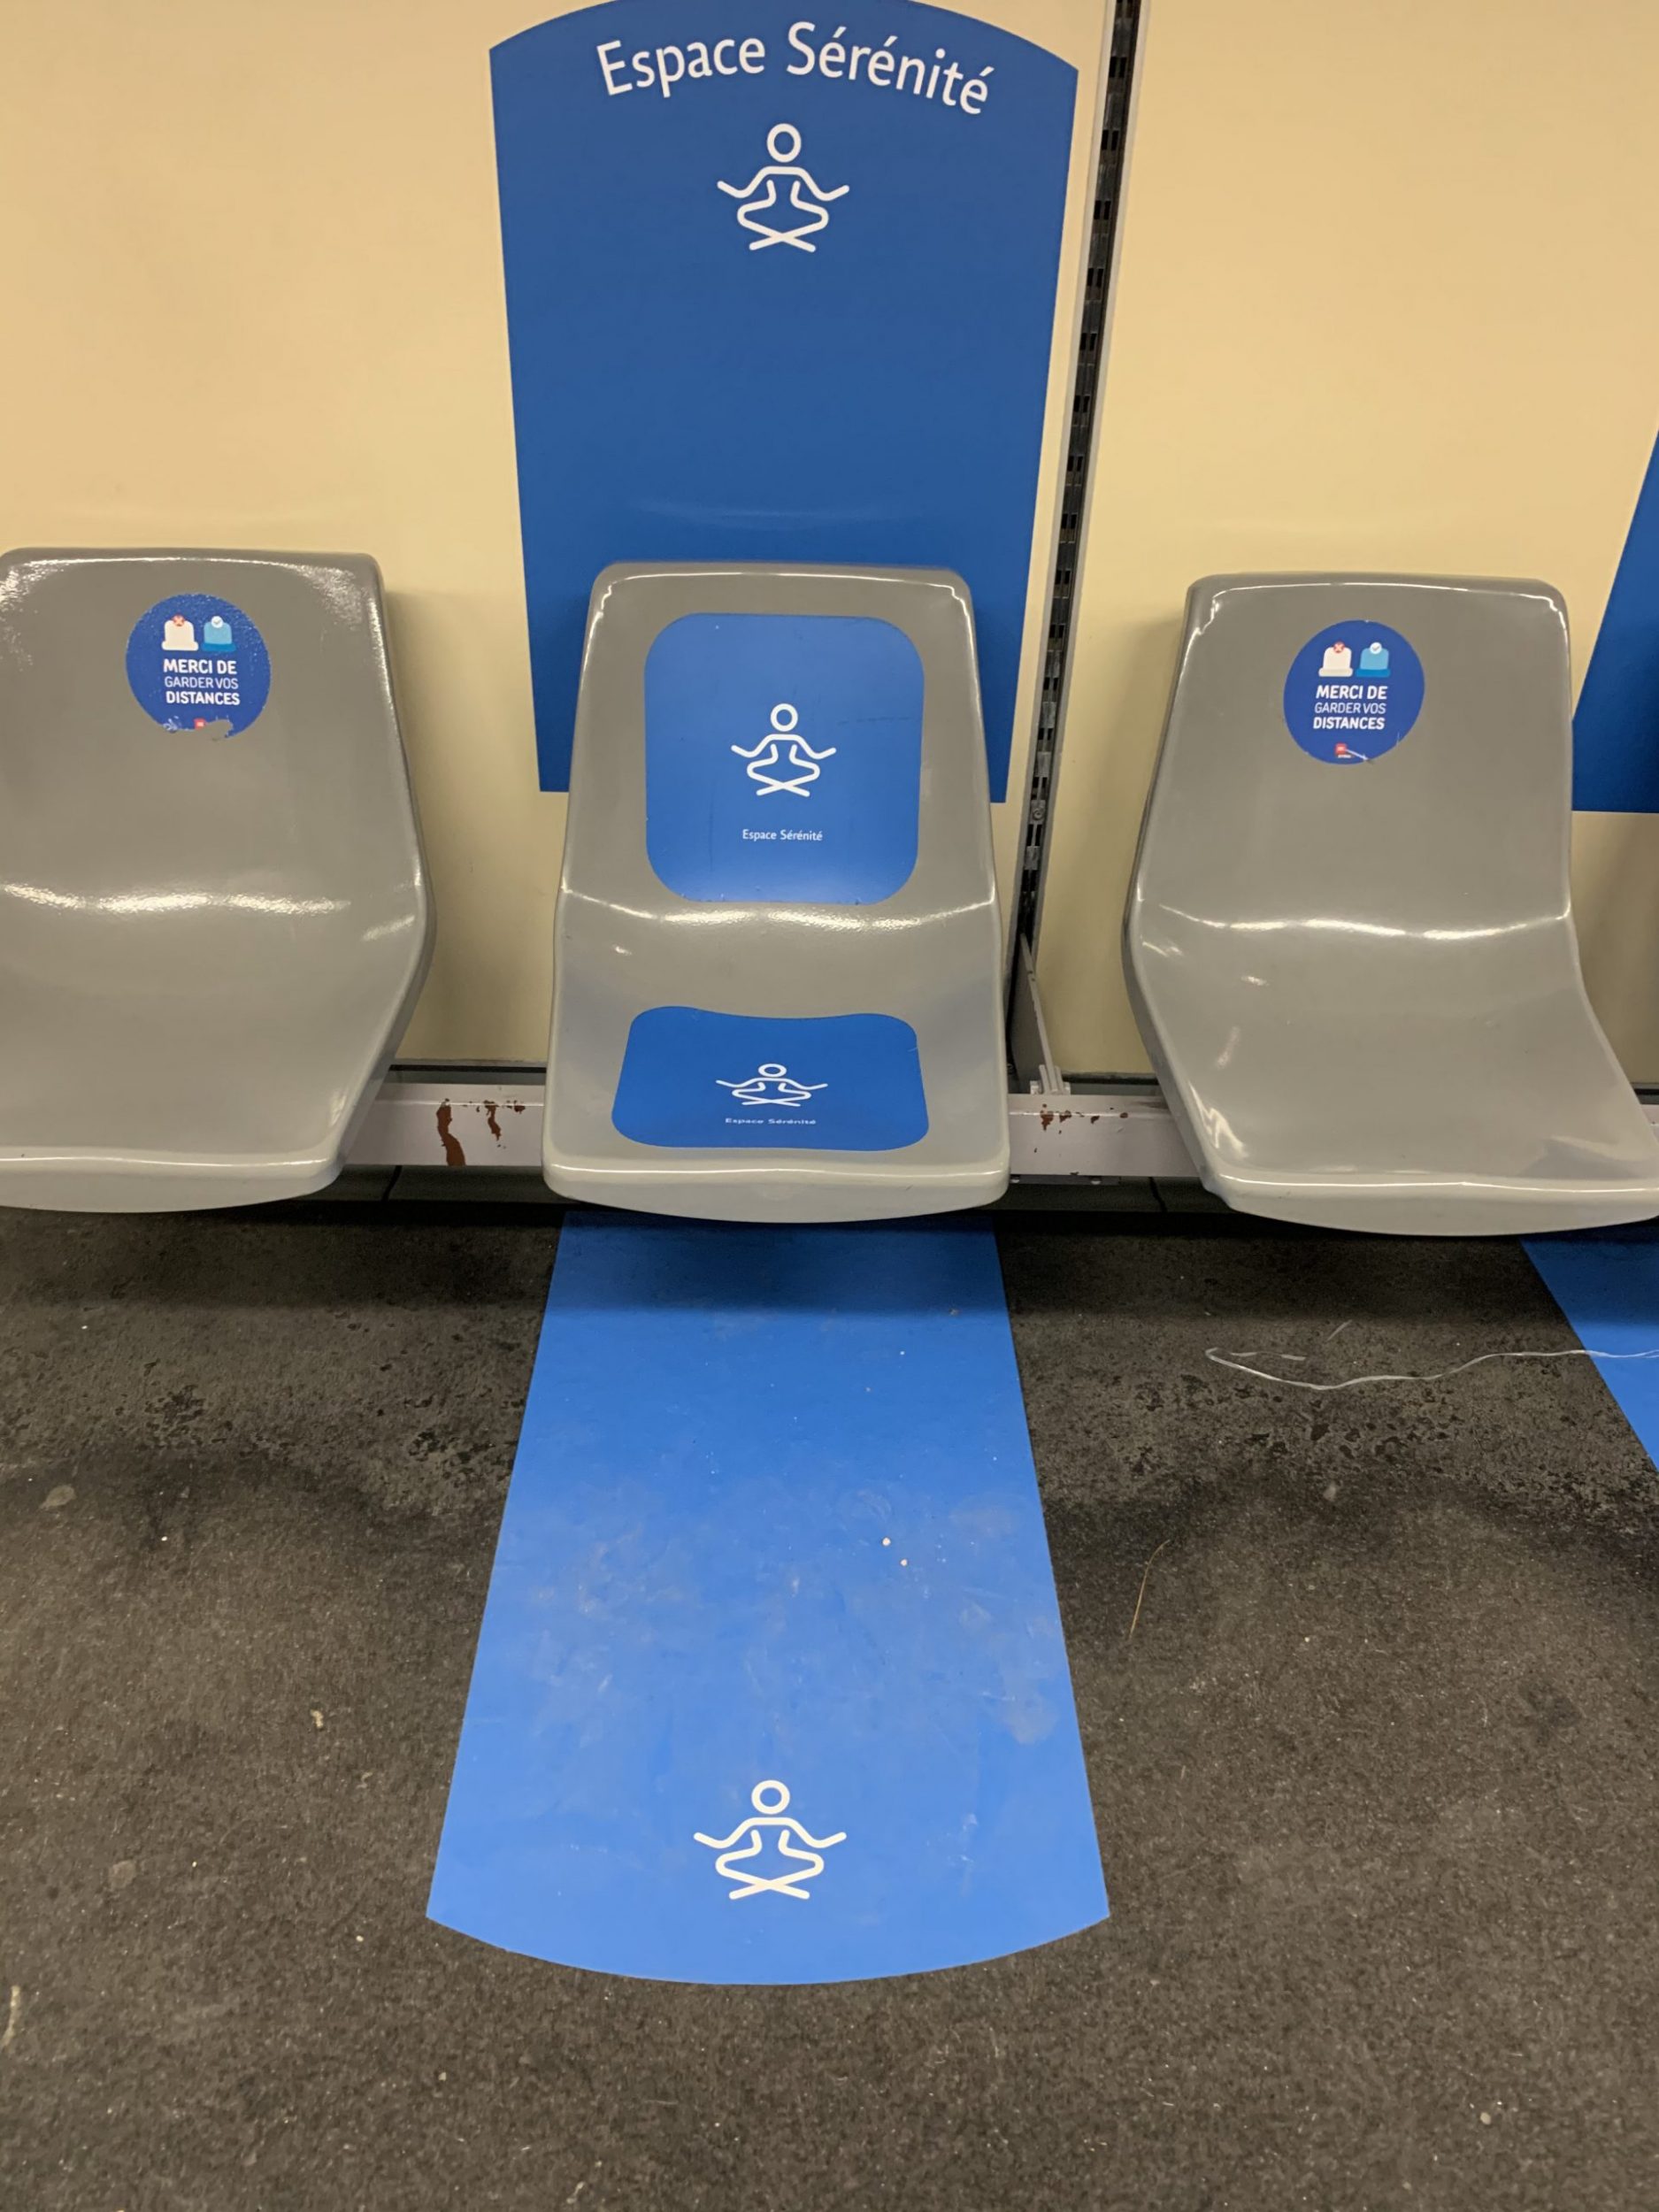 Un siège avec une signalétique pour indiquer qu'il s'agit d'un espace de sérénité dans dédié au dispositif de la ligne bleue pour aider les personnes atteintes d'autisme